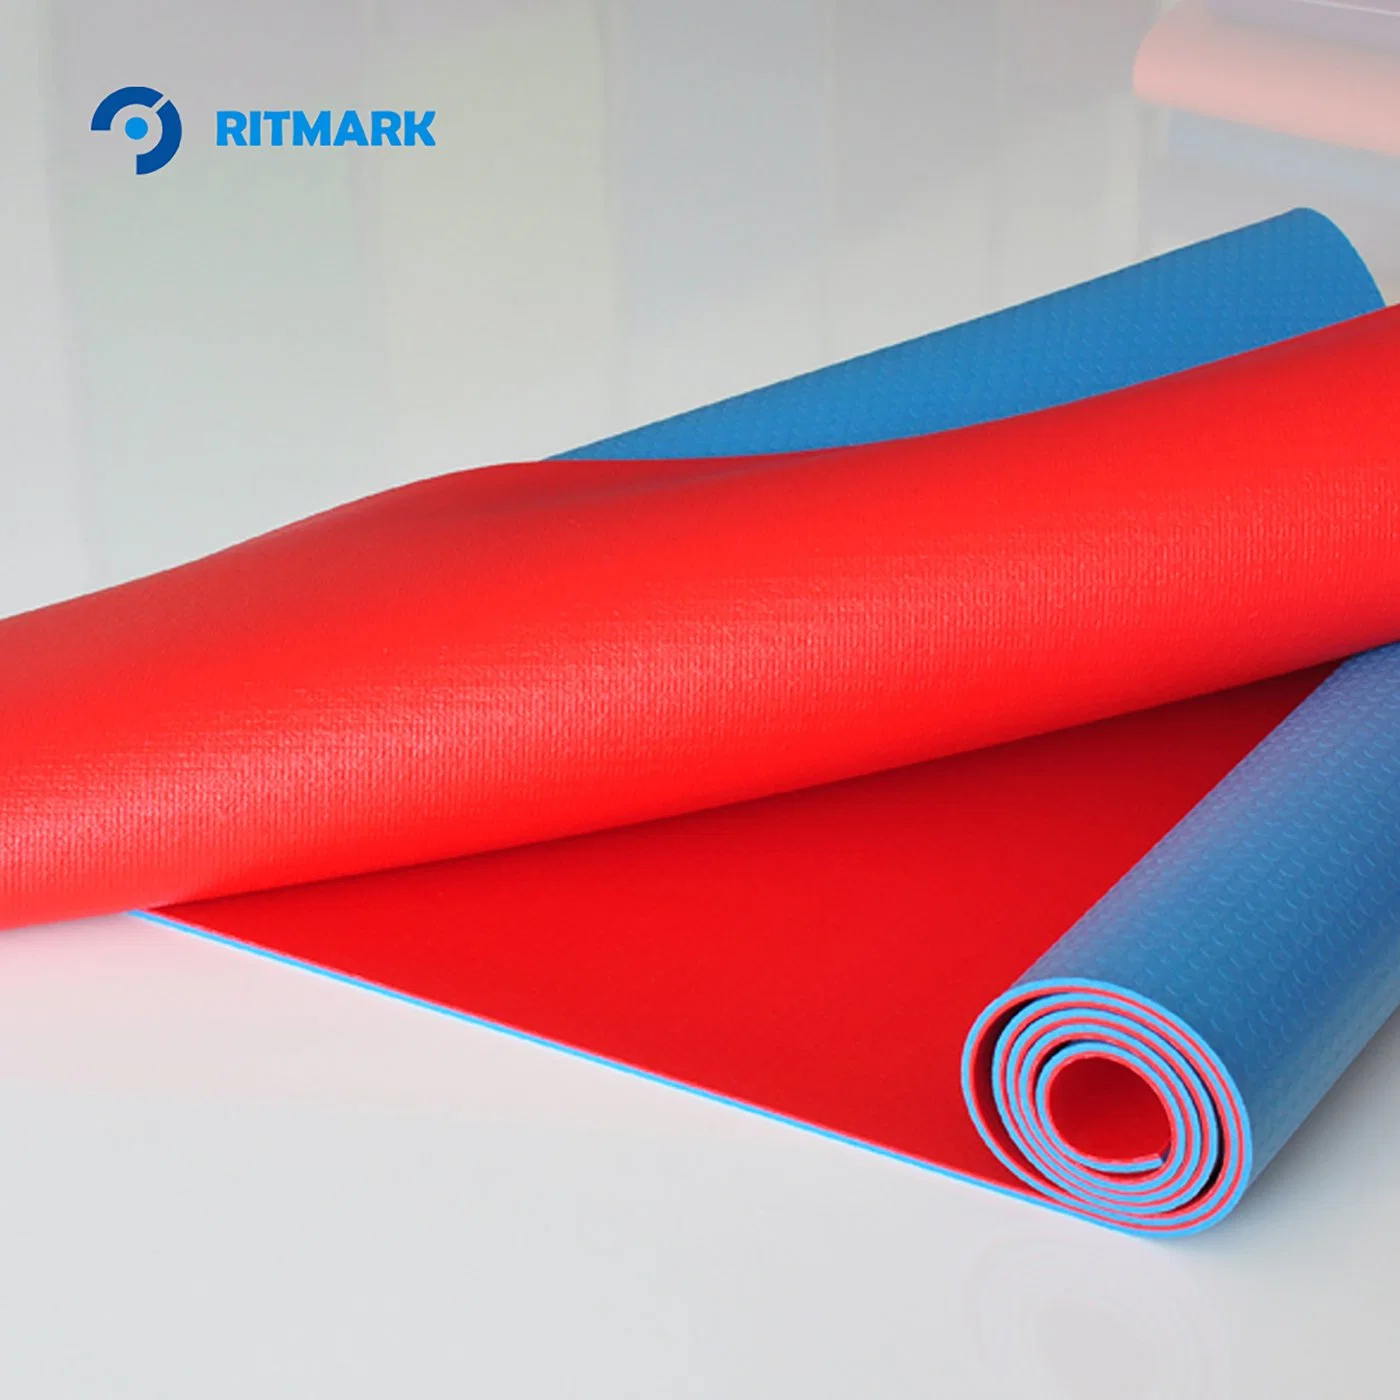 Haga uso completo de ambos lados del Ritmark Yoga reversible Esteras